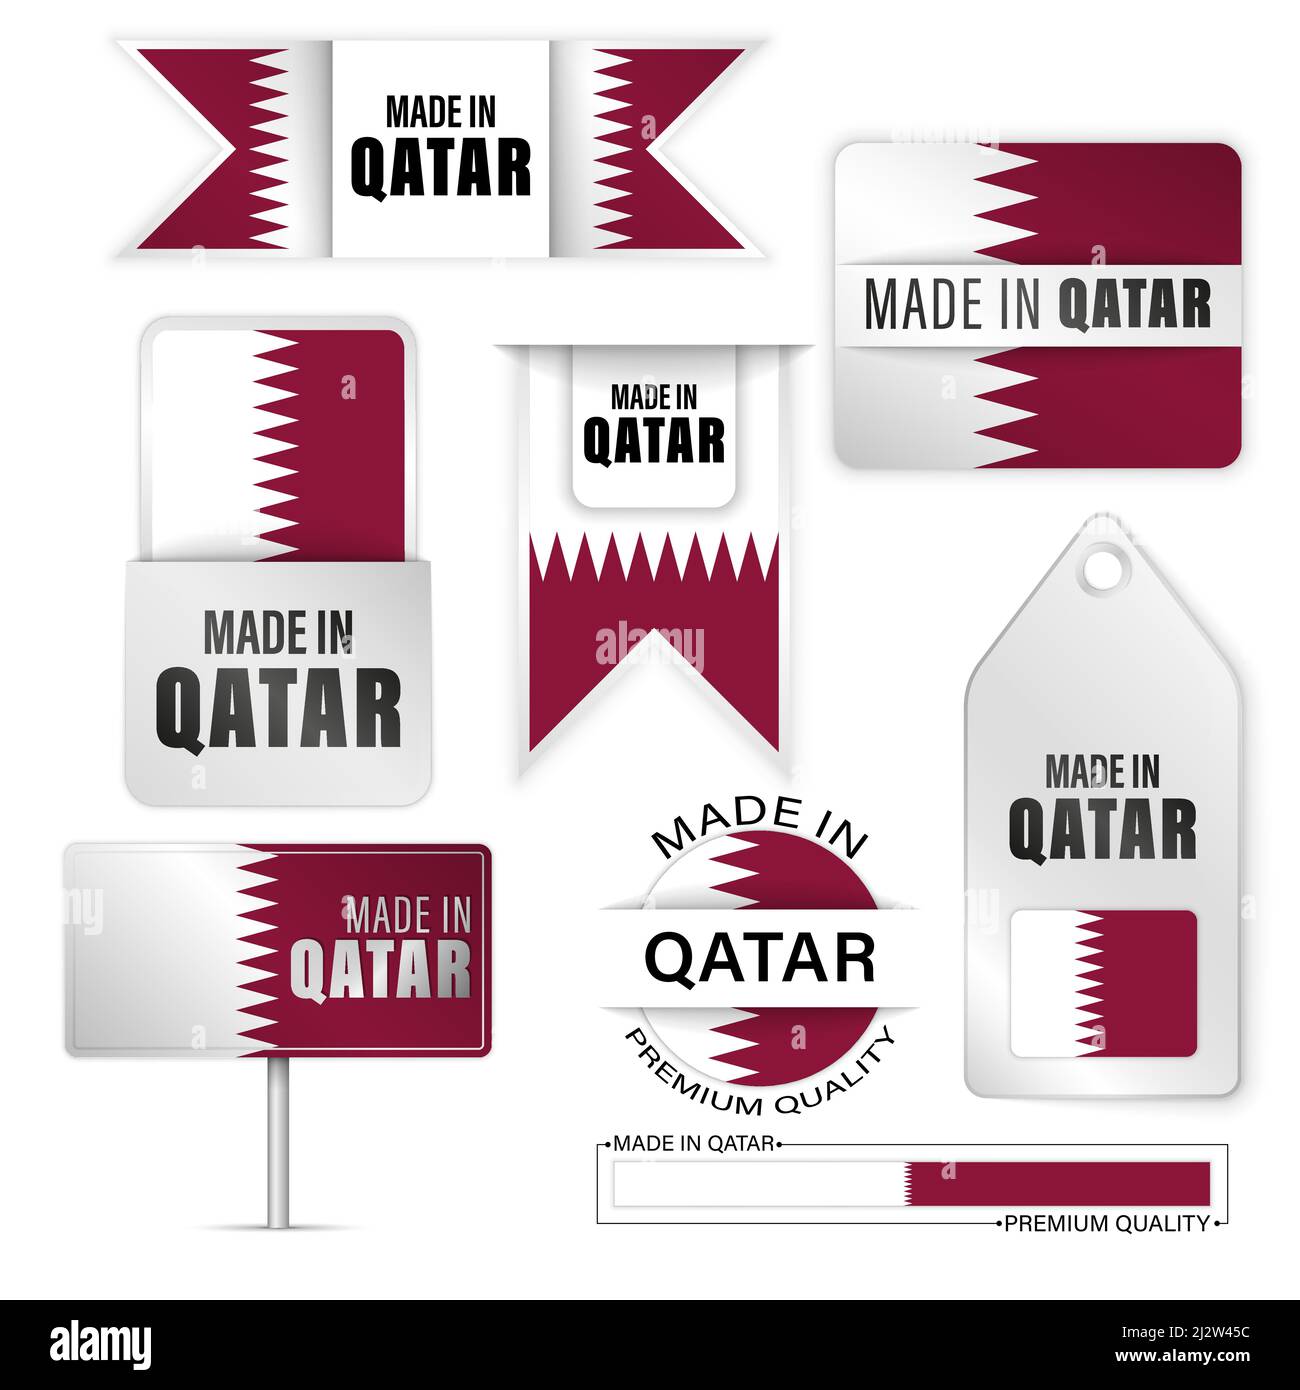 Made in Katar Grafiken und Labels Set. Einige Elemente der Auswirkung für die Verwendung, die Sie daraus machen möchten. Stock Vektor